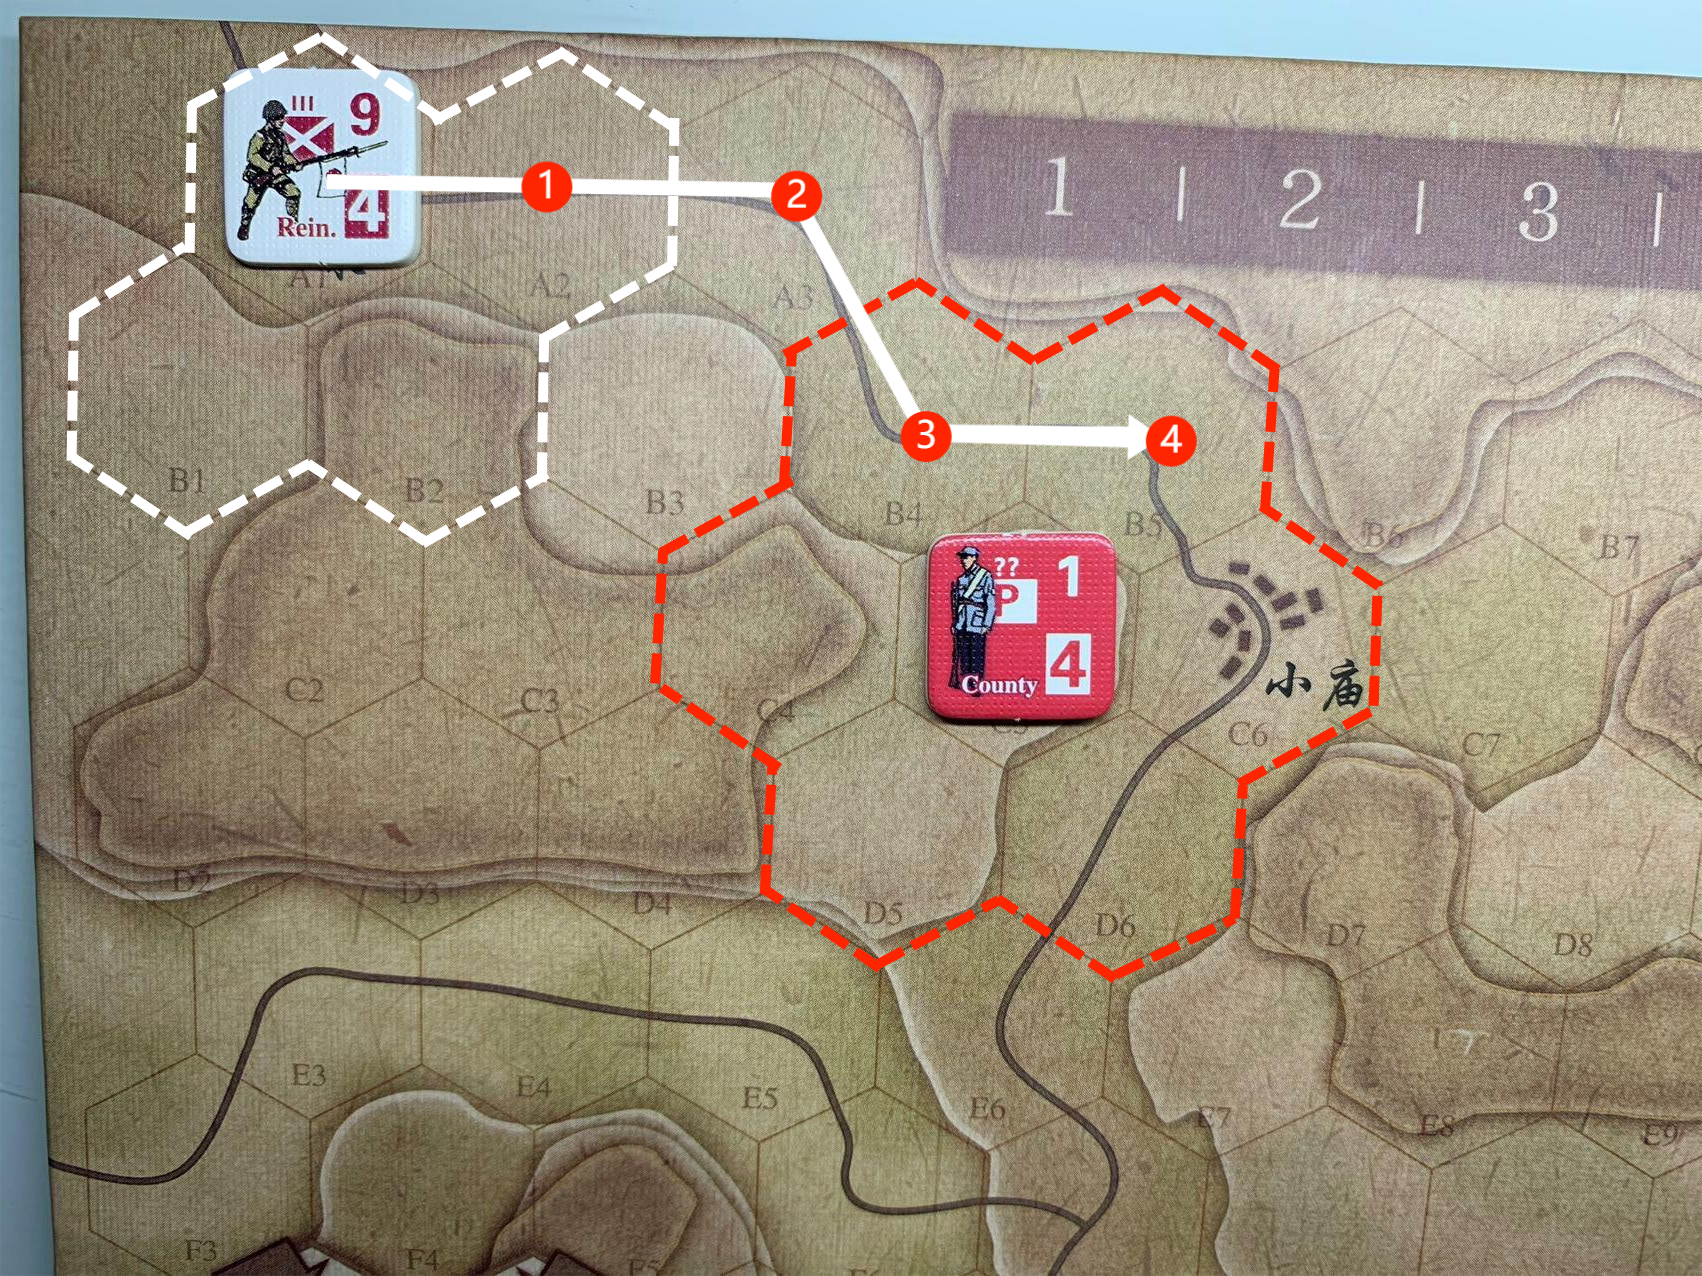 继续使用同一个例子，假设现在是日军移动阶段，图中左上方的日军增援部队计划按照箭头方向，沿道路移动4格，预计消耗全部移动力（算子右下方红底白字的“4”）后将停留在B5